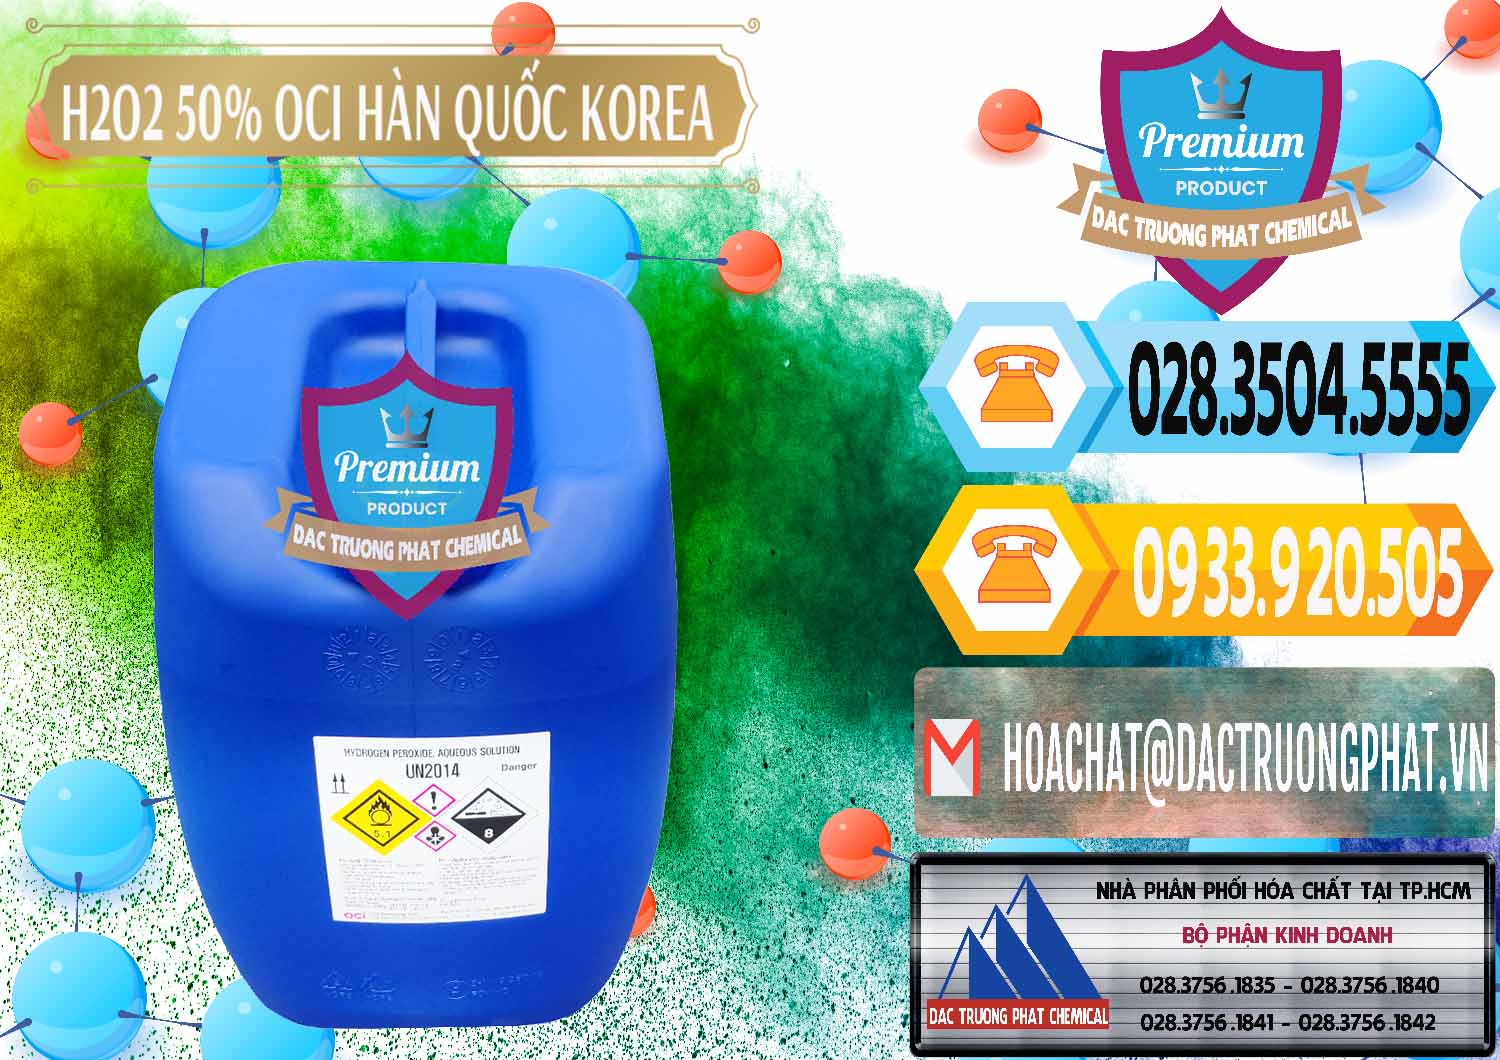 Công ty chuyên bán - cung cấp H2O2 - Hydrogen Peroxide 50% OCI Hàn Quốc Korea - 0075 - Đơn vị cung cấp - phân phối hóa chất tại TP.HCM - hoachattayrua.net